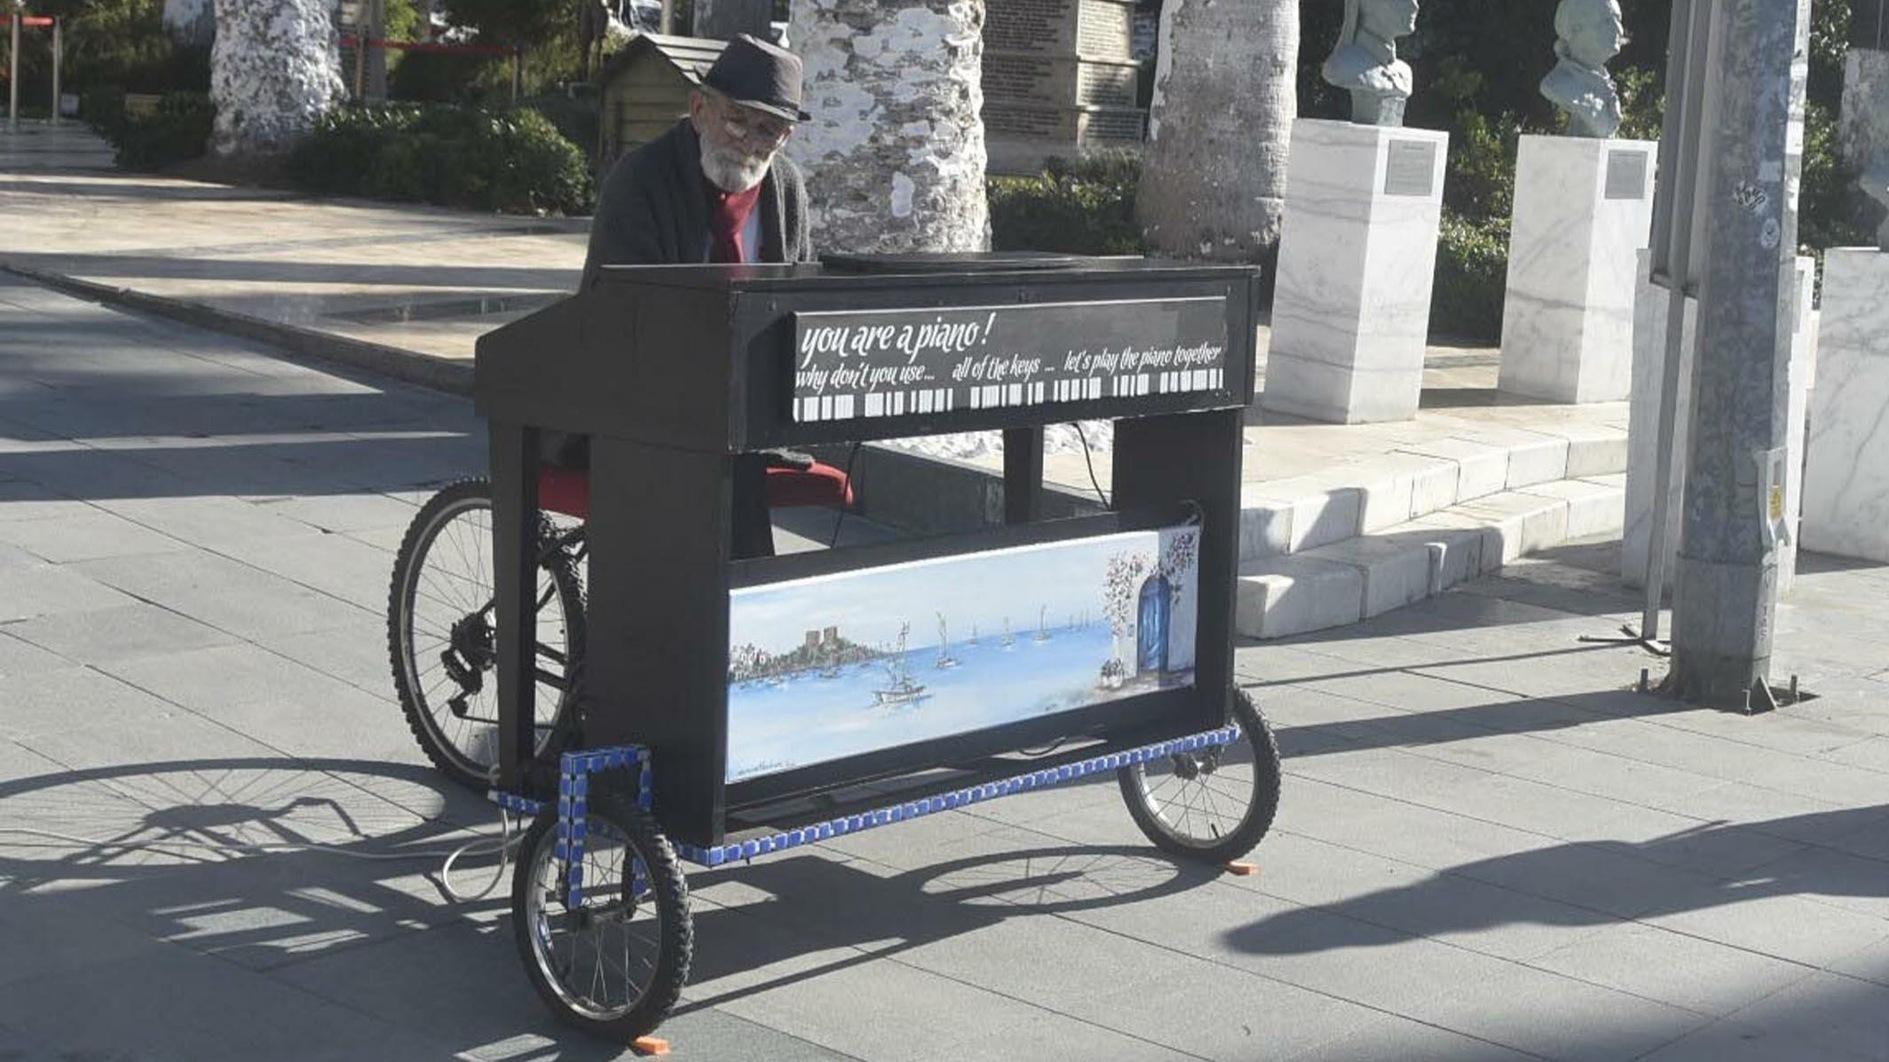 Inwoner van Bodrum brengt een serenade aan de stad met fietspiano